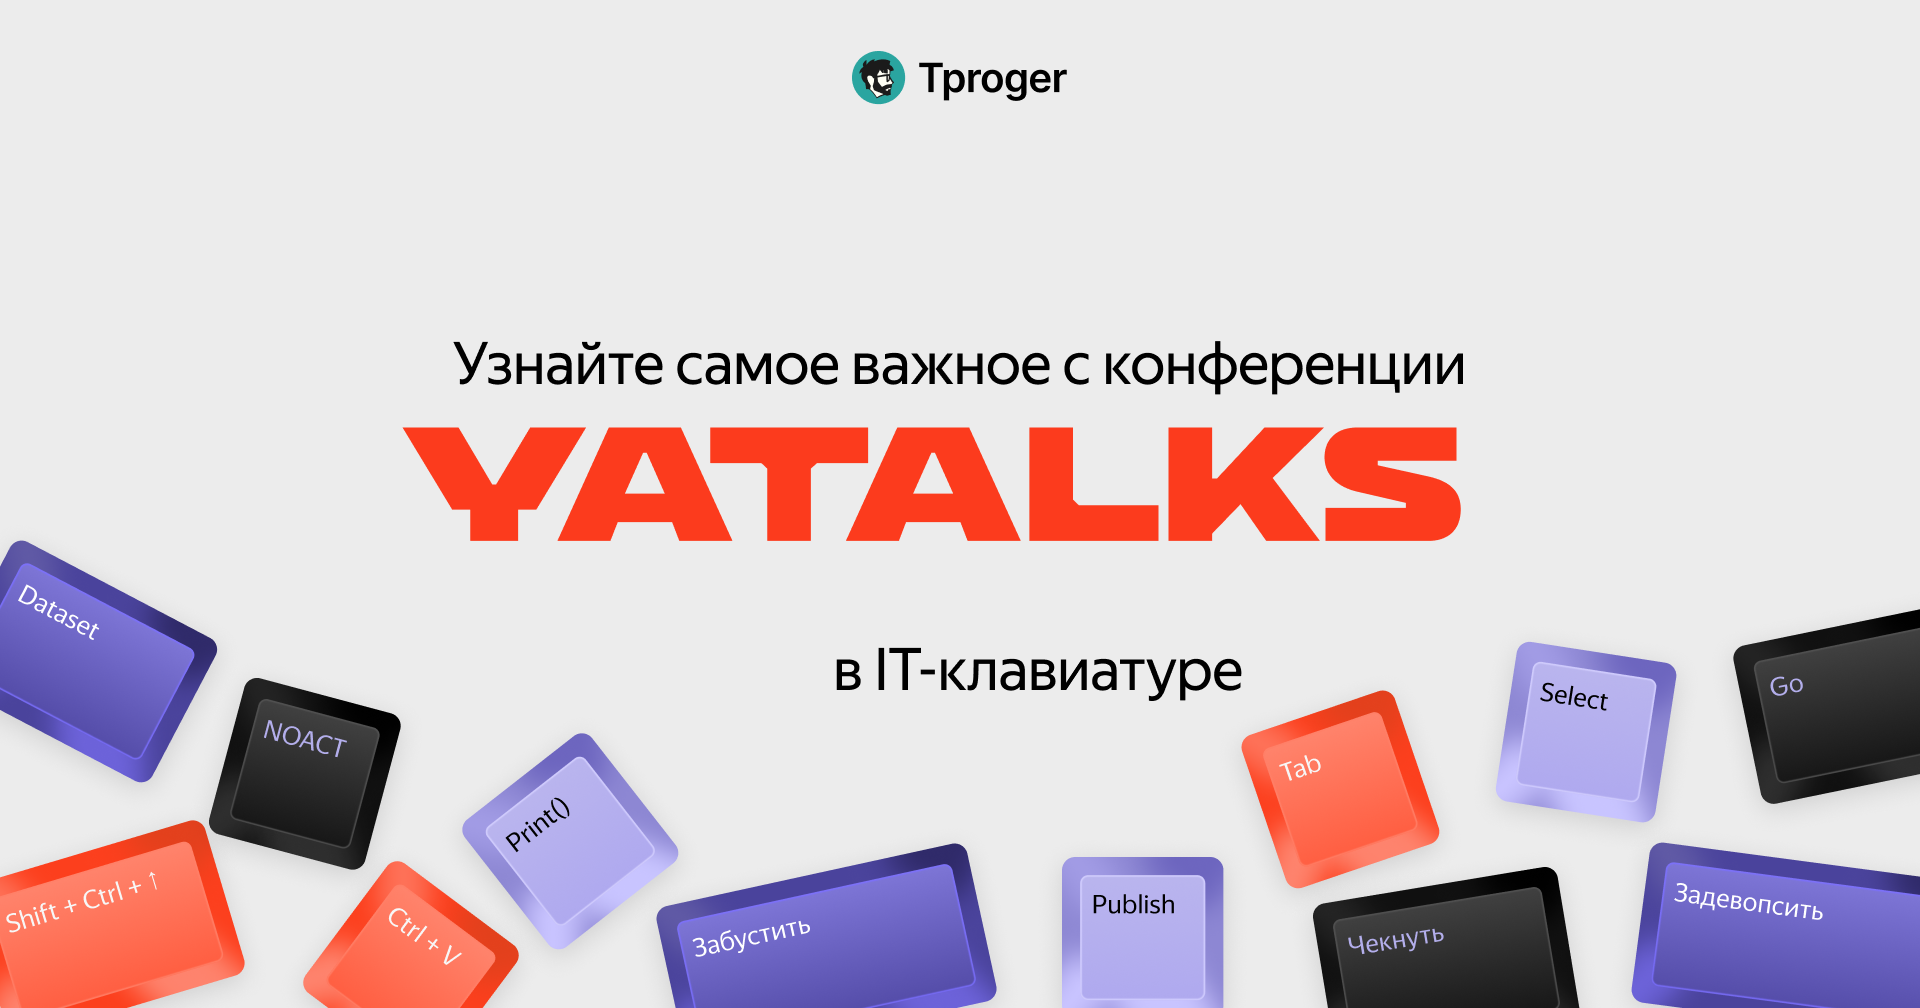 IT-клавиатура важных смыслов с конференции Yatalks